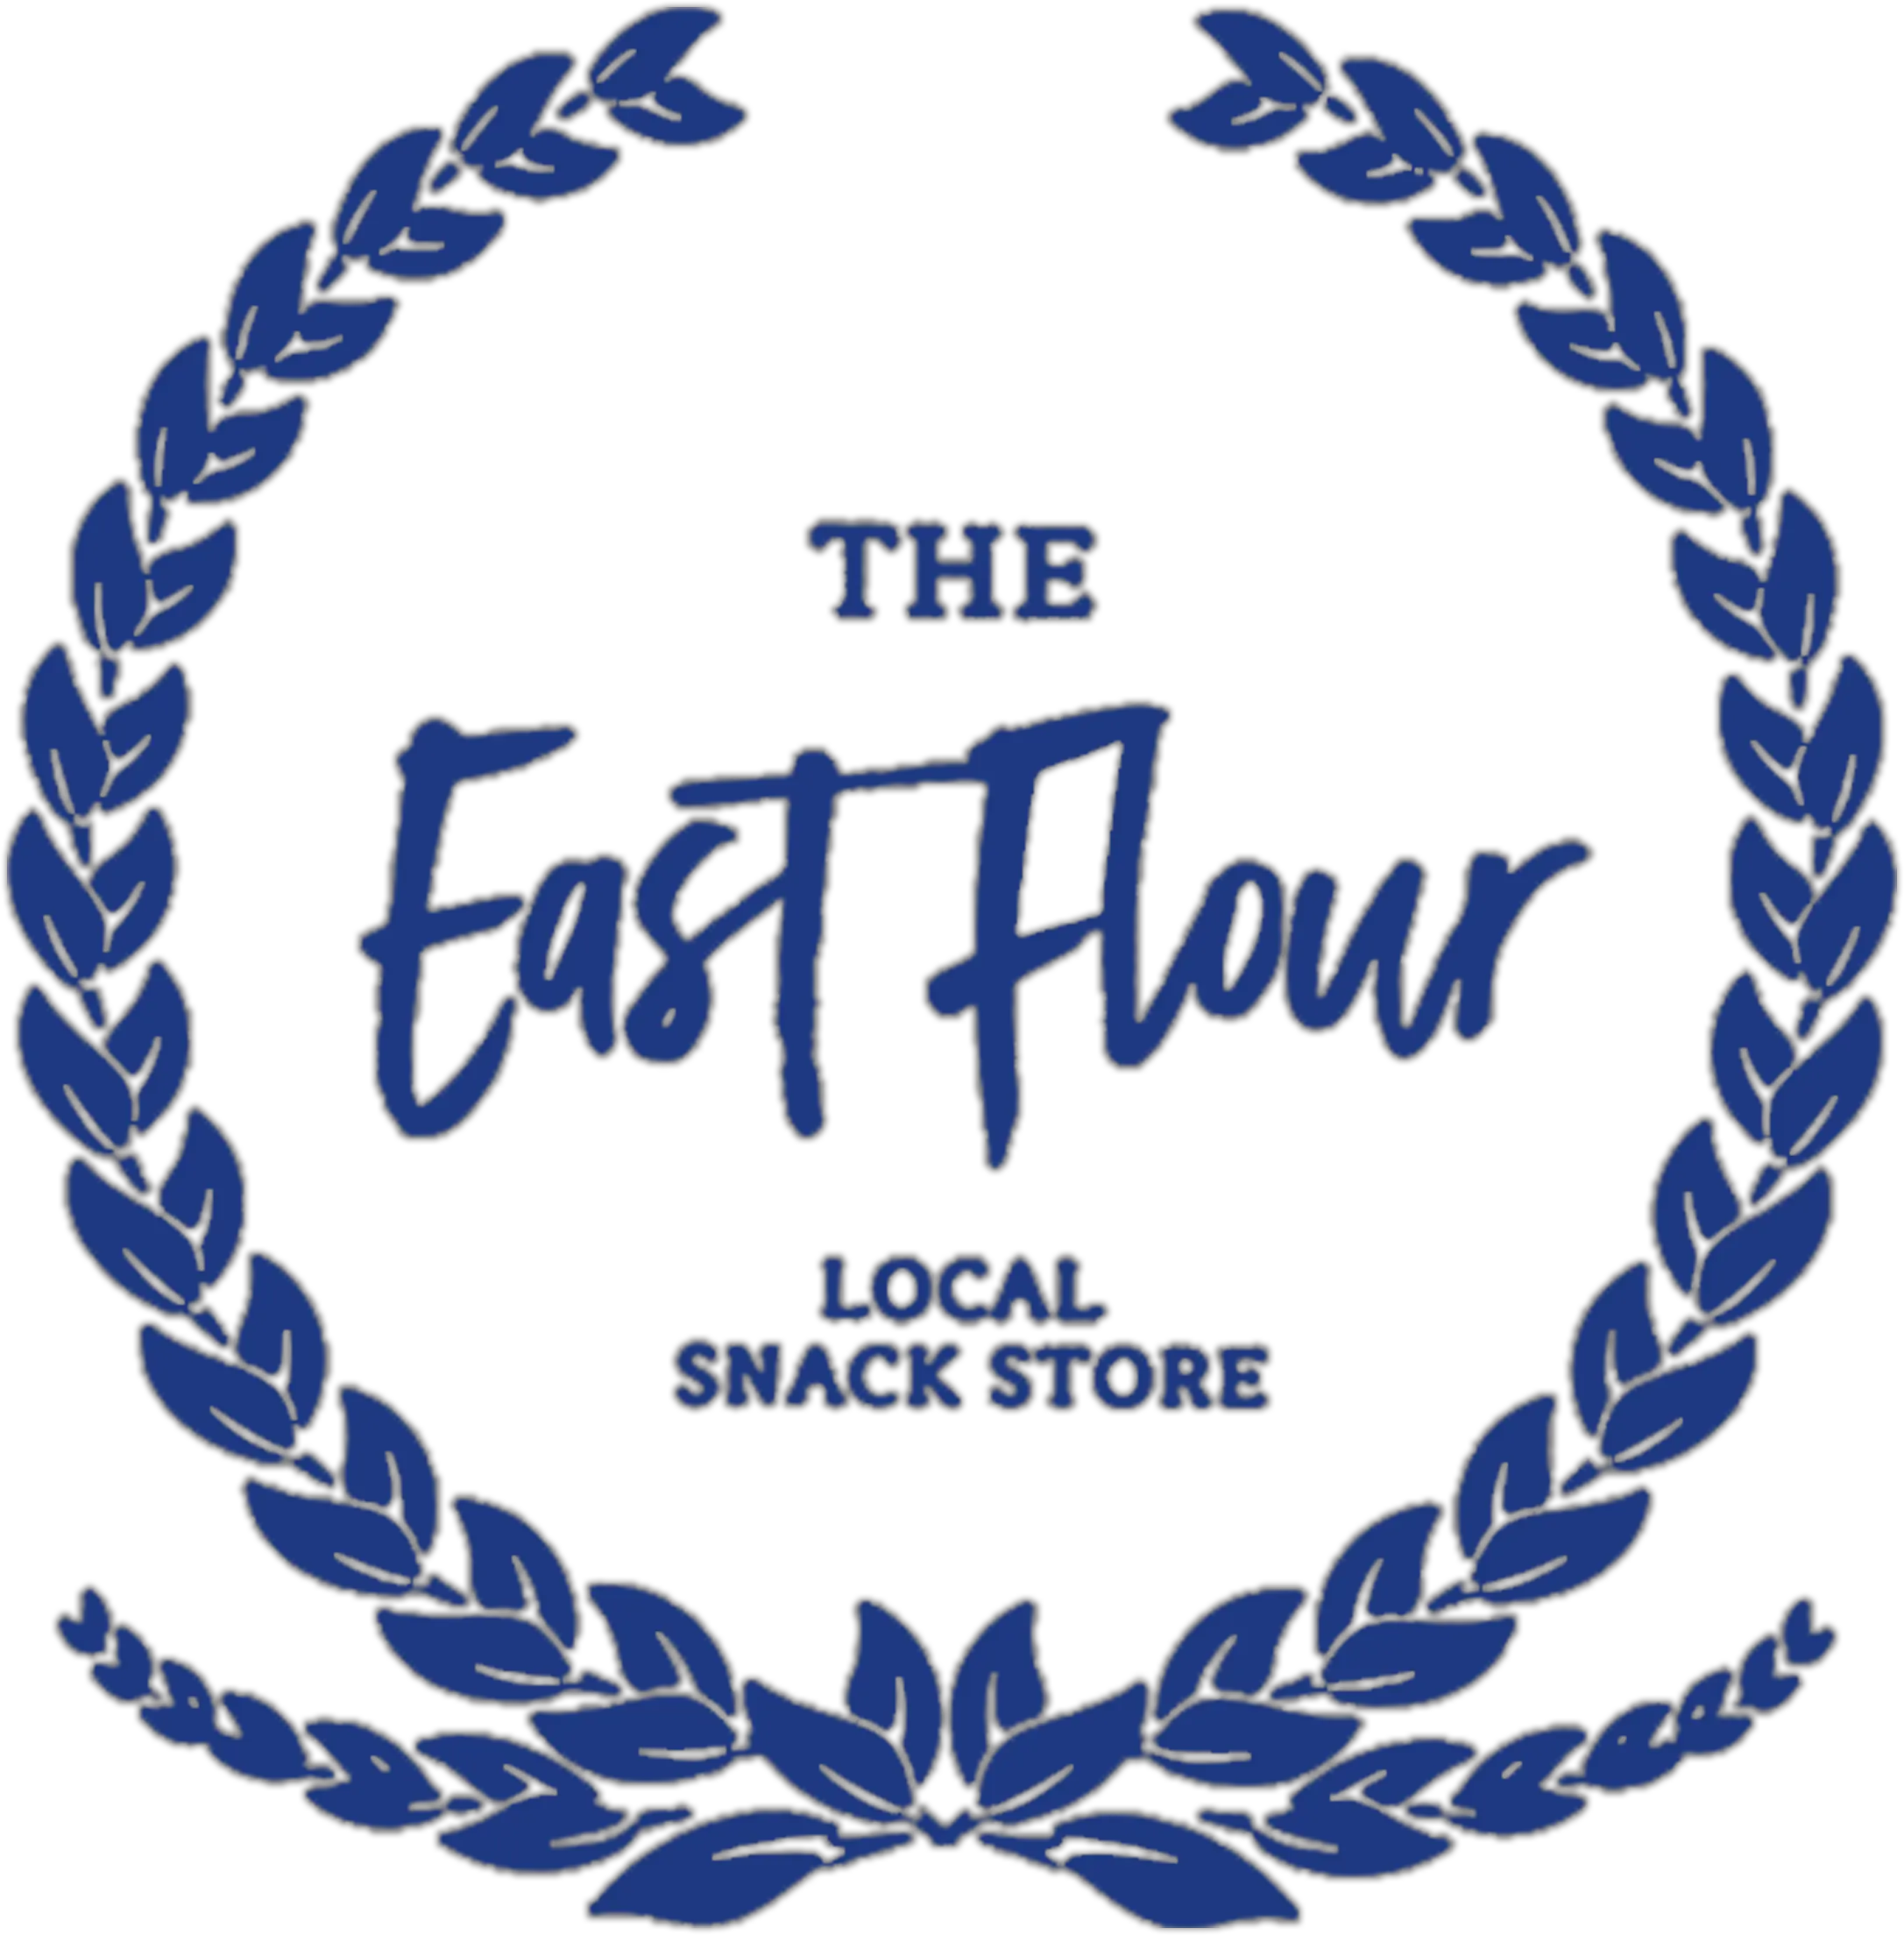 East Flour